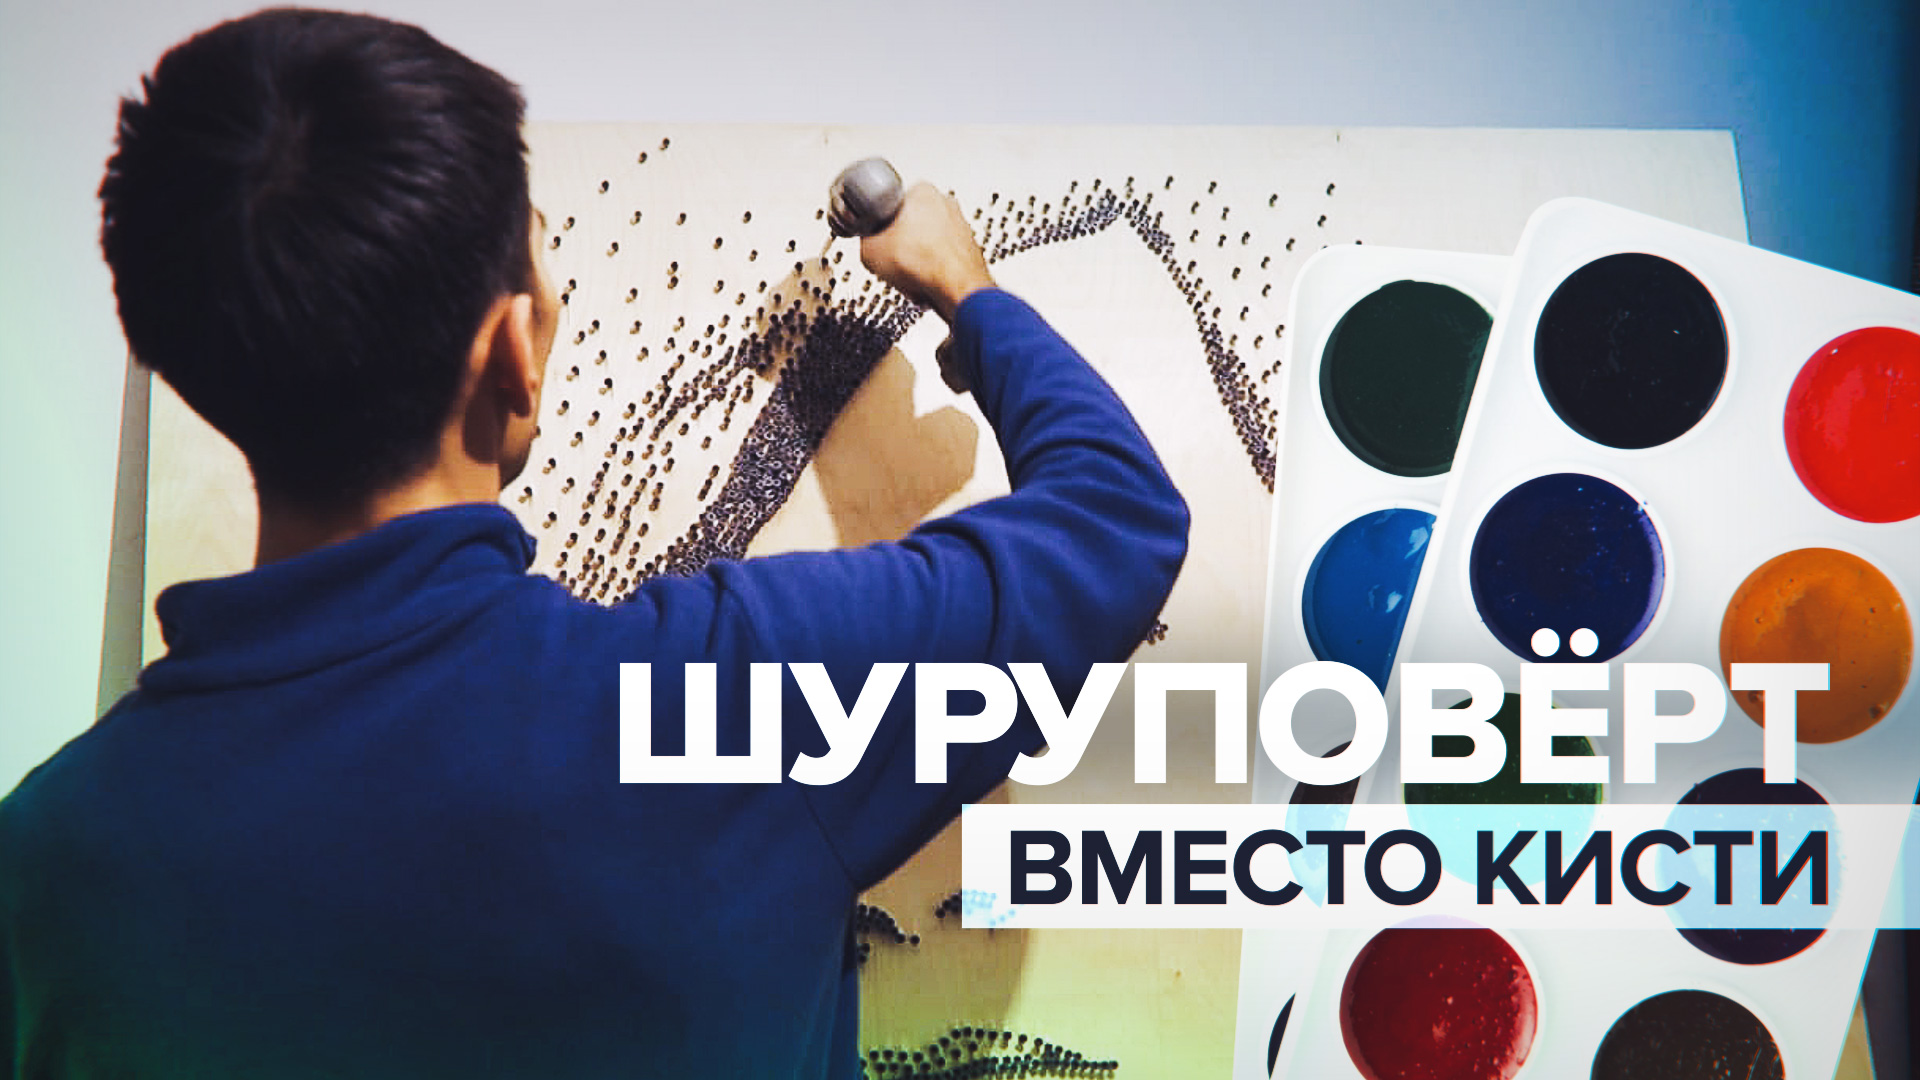 Винтик за винтиком: художник из Казахстана «нарисовал» портрет с помощью шуруповёрта